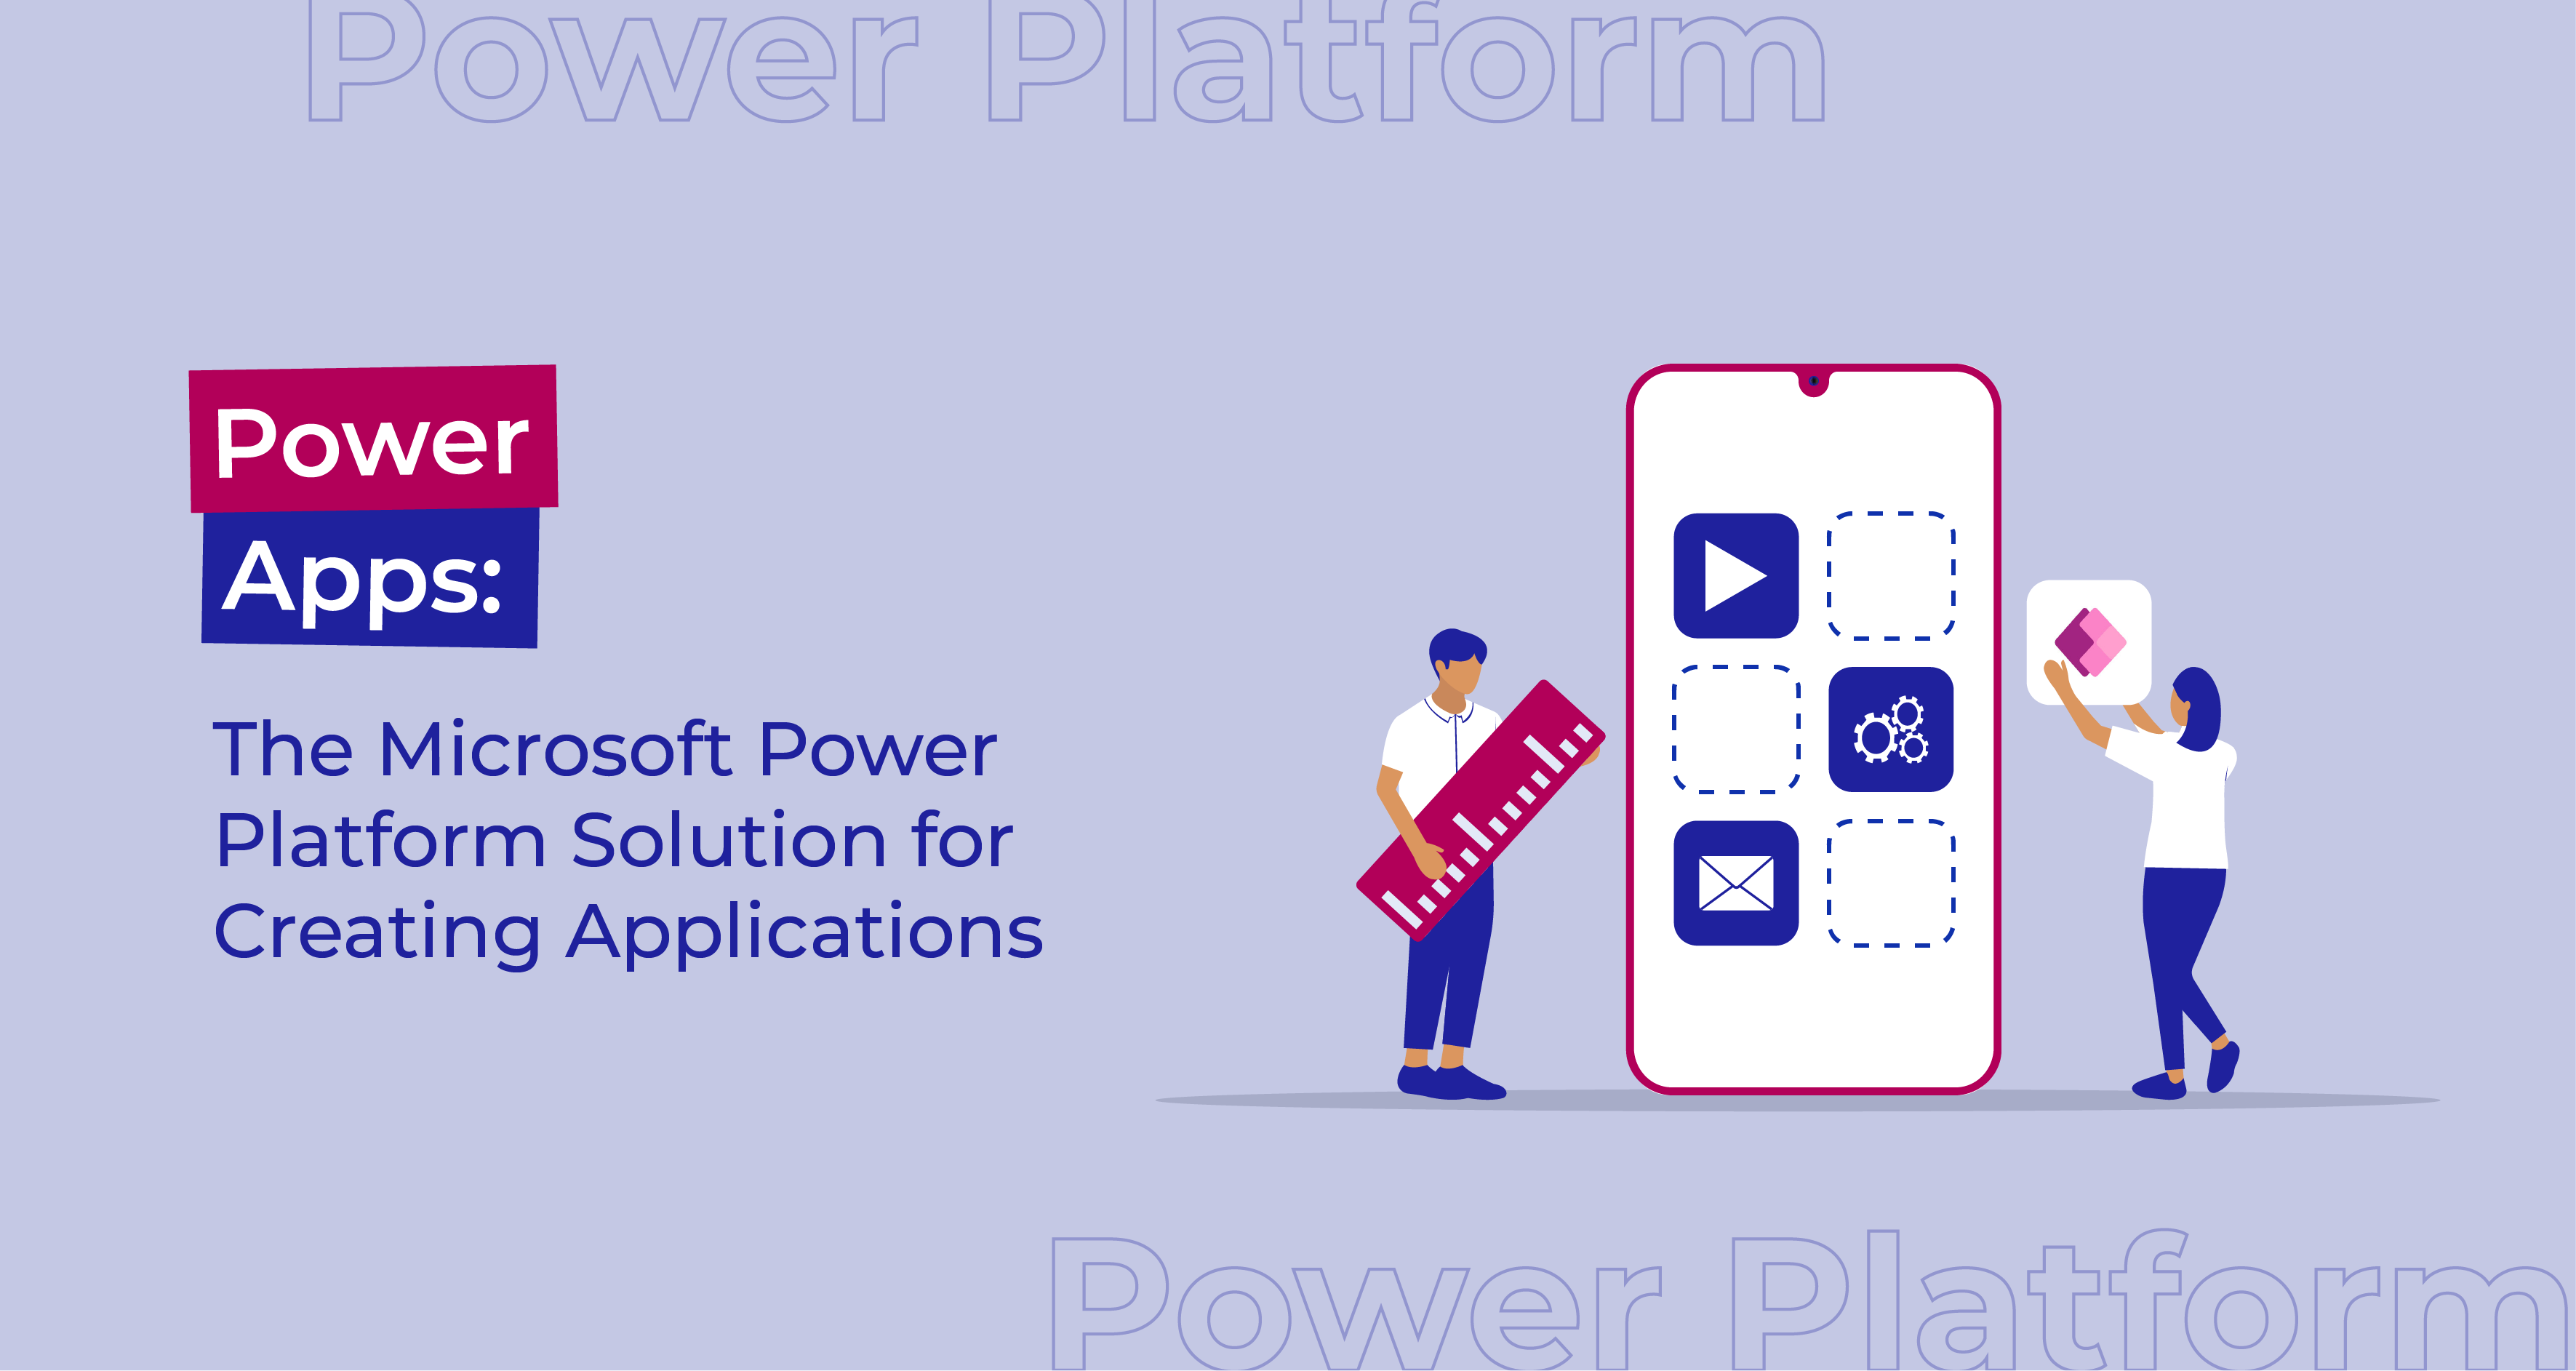 Power Apps : la solution de Microsoft Power Platform pour créer des applications